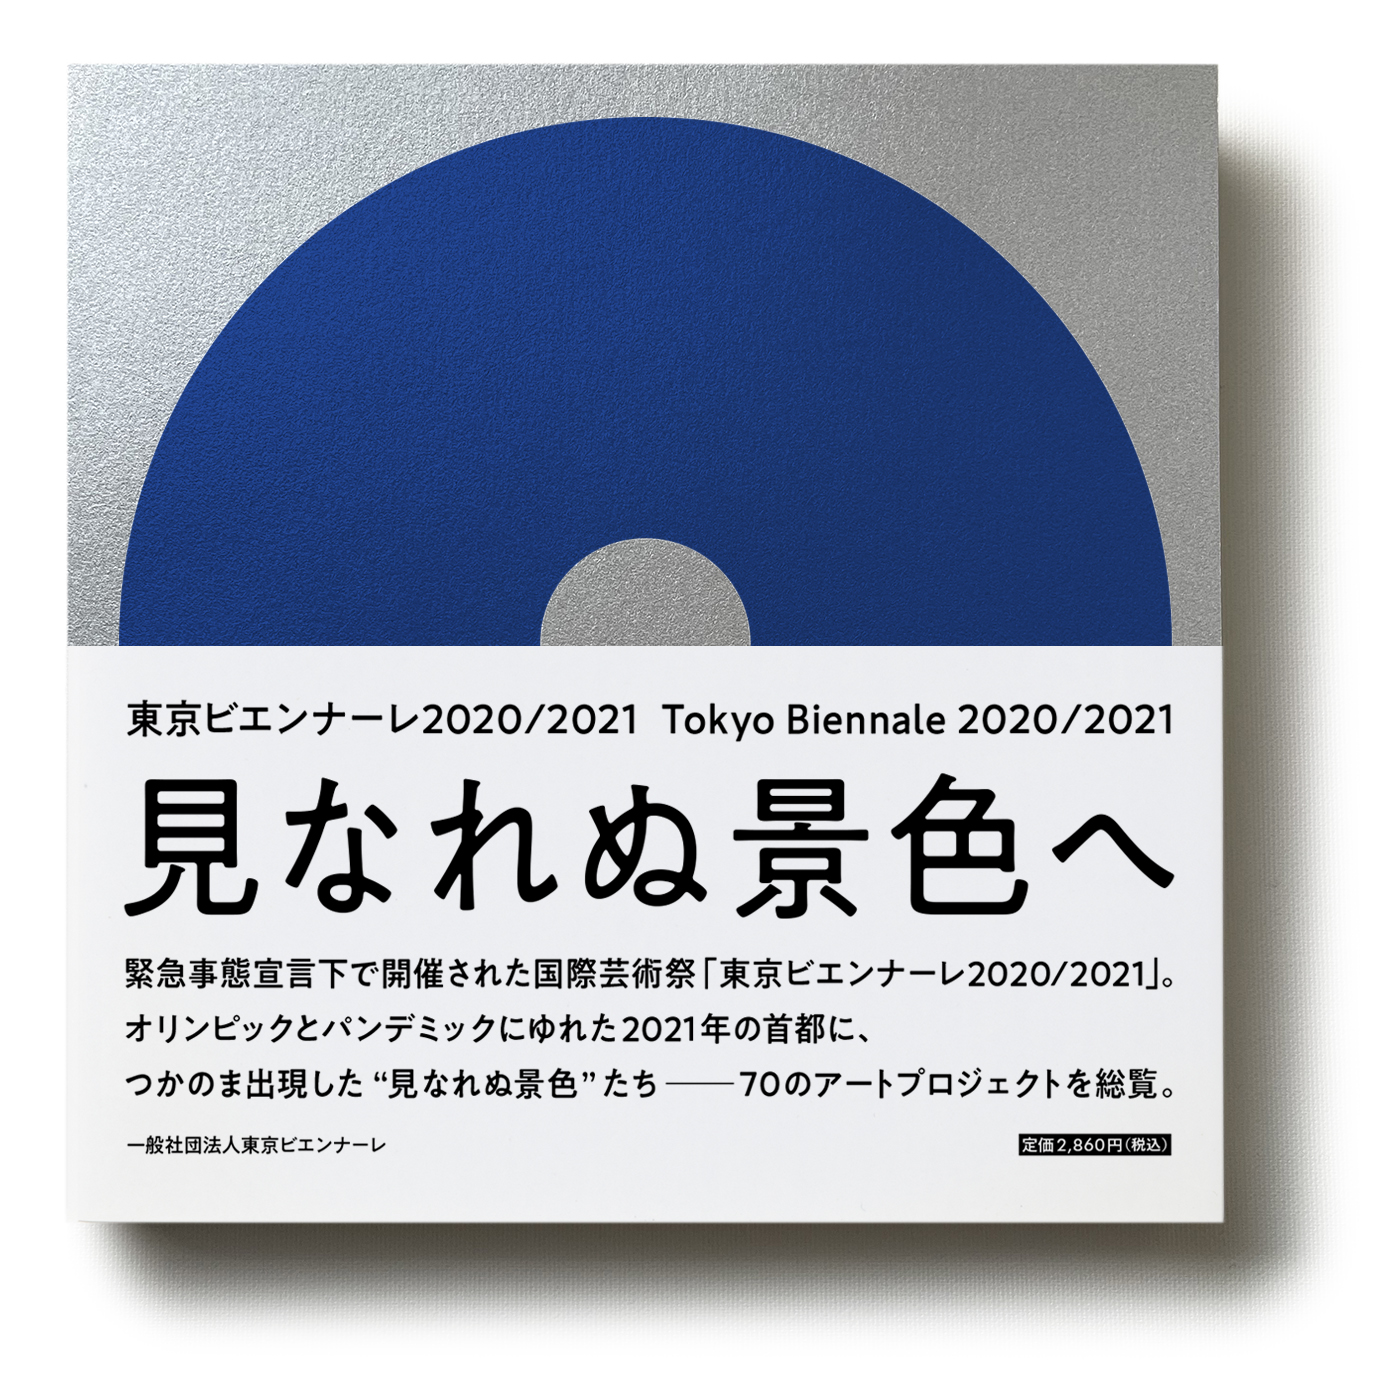 『東京ビエンナーレ2020/2021 見なれぬ景色へ』